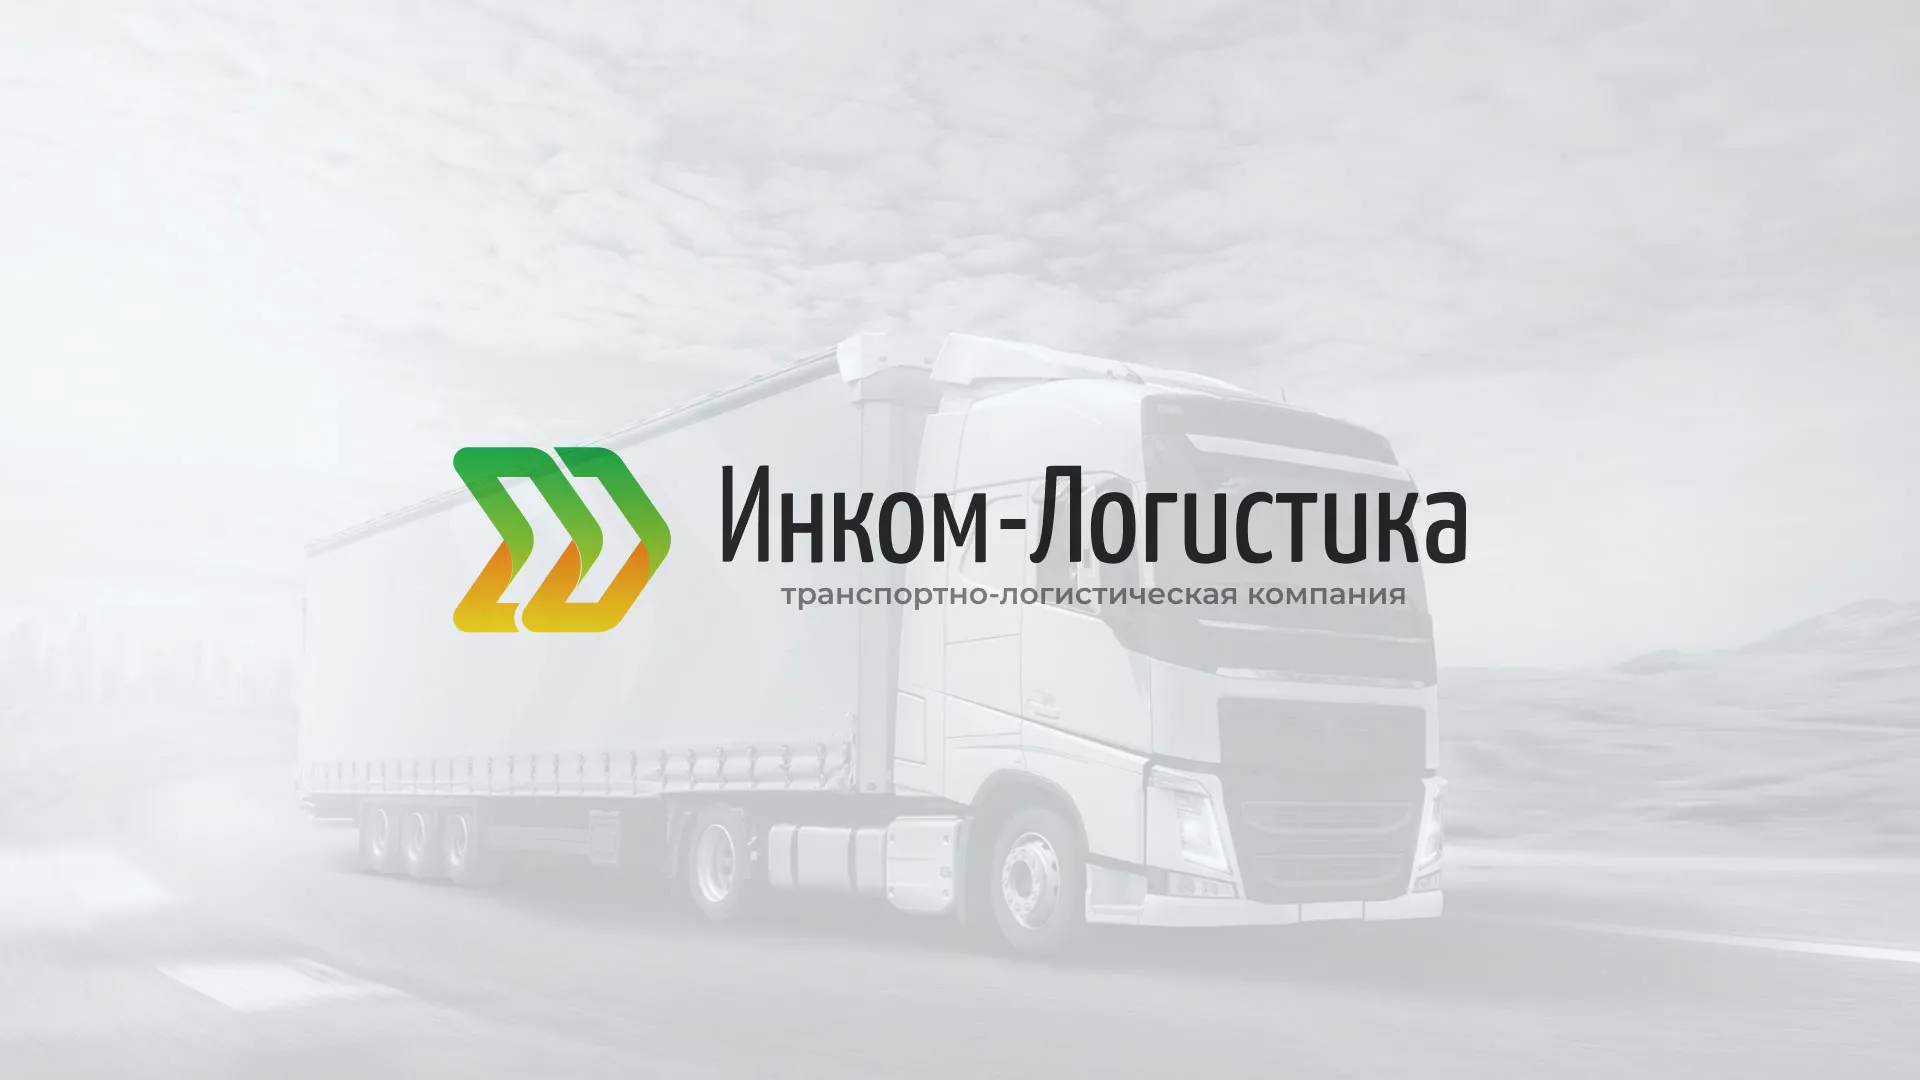 Разработка логотипа и сайта компании «Инком-Логистика» в Симферополе